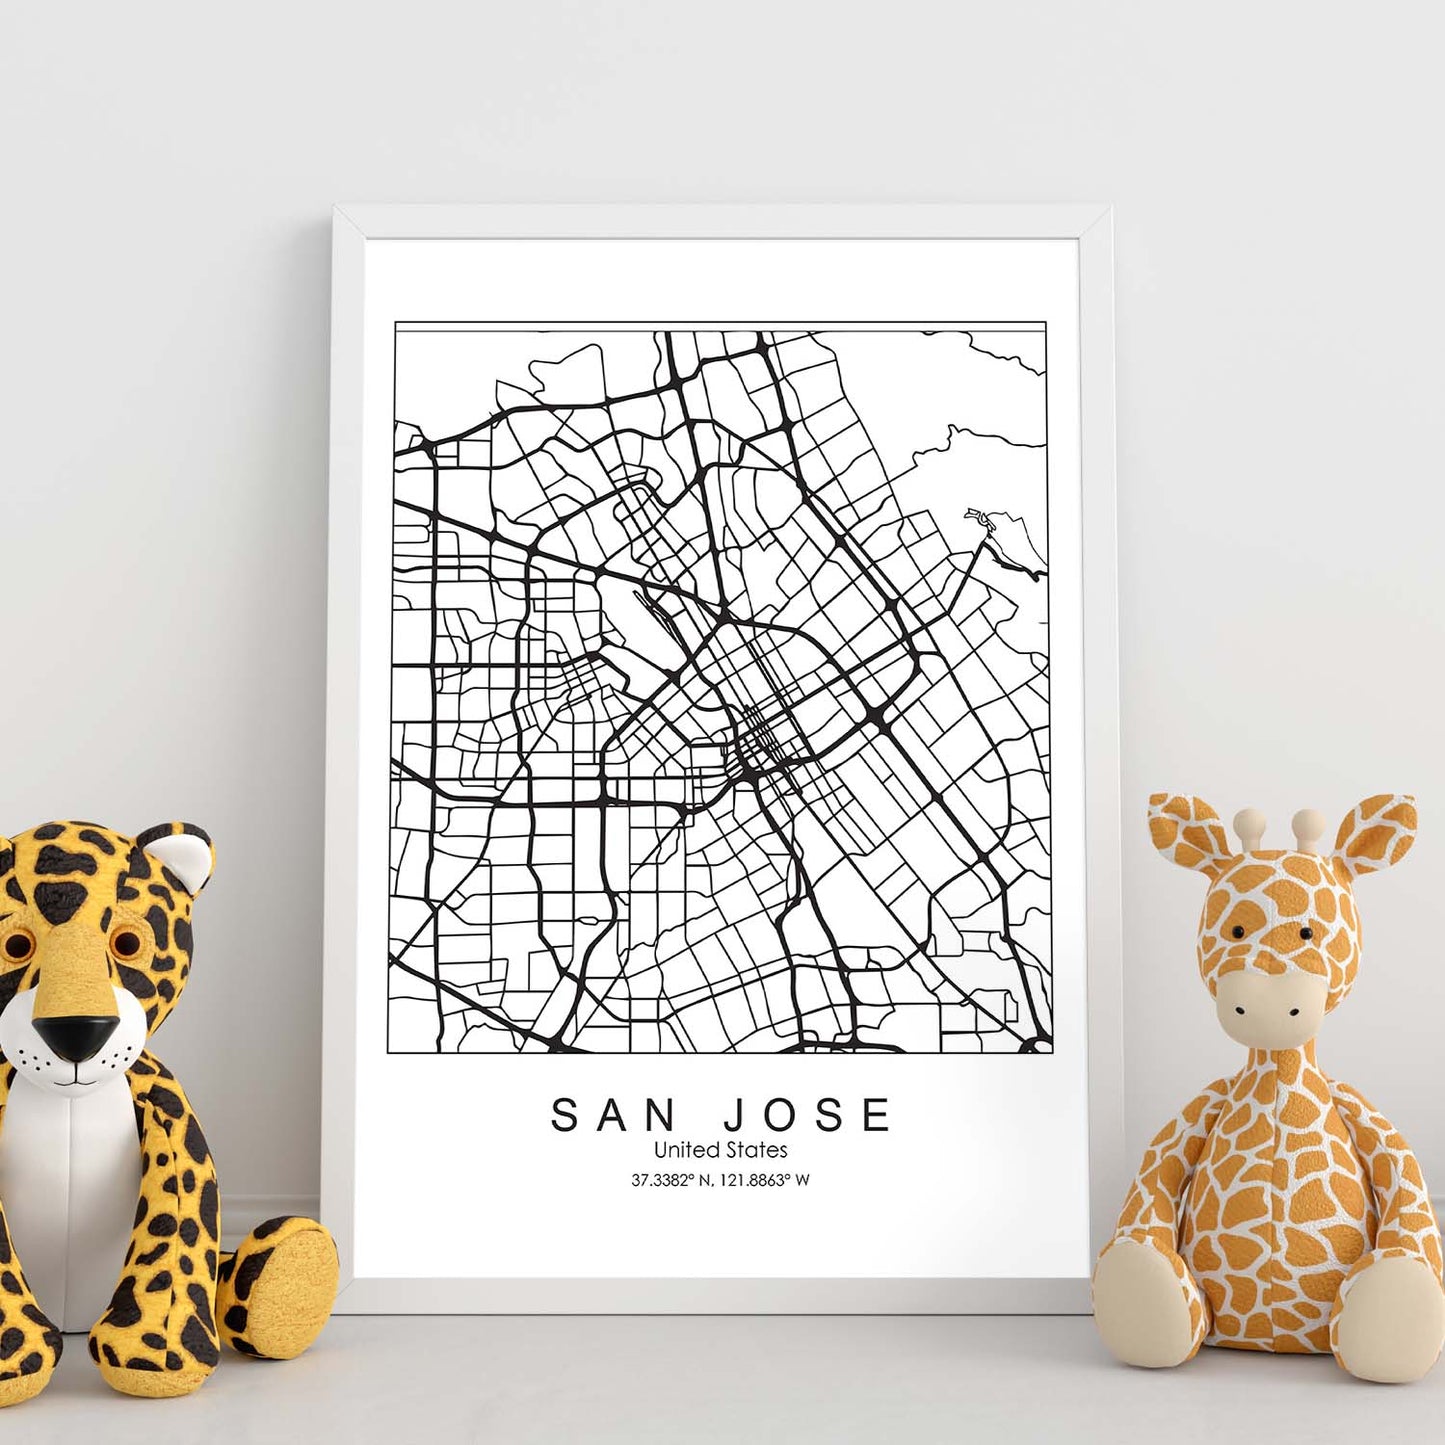 Poster con mapa de San Jose. Lámina de Estados Unidos, con imágenes de mapas y carreteras-Artwork-Nacnic-Nacnic Estudio SL